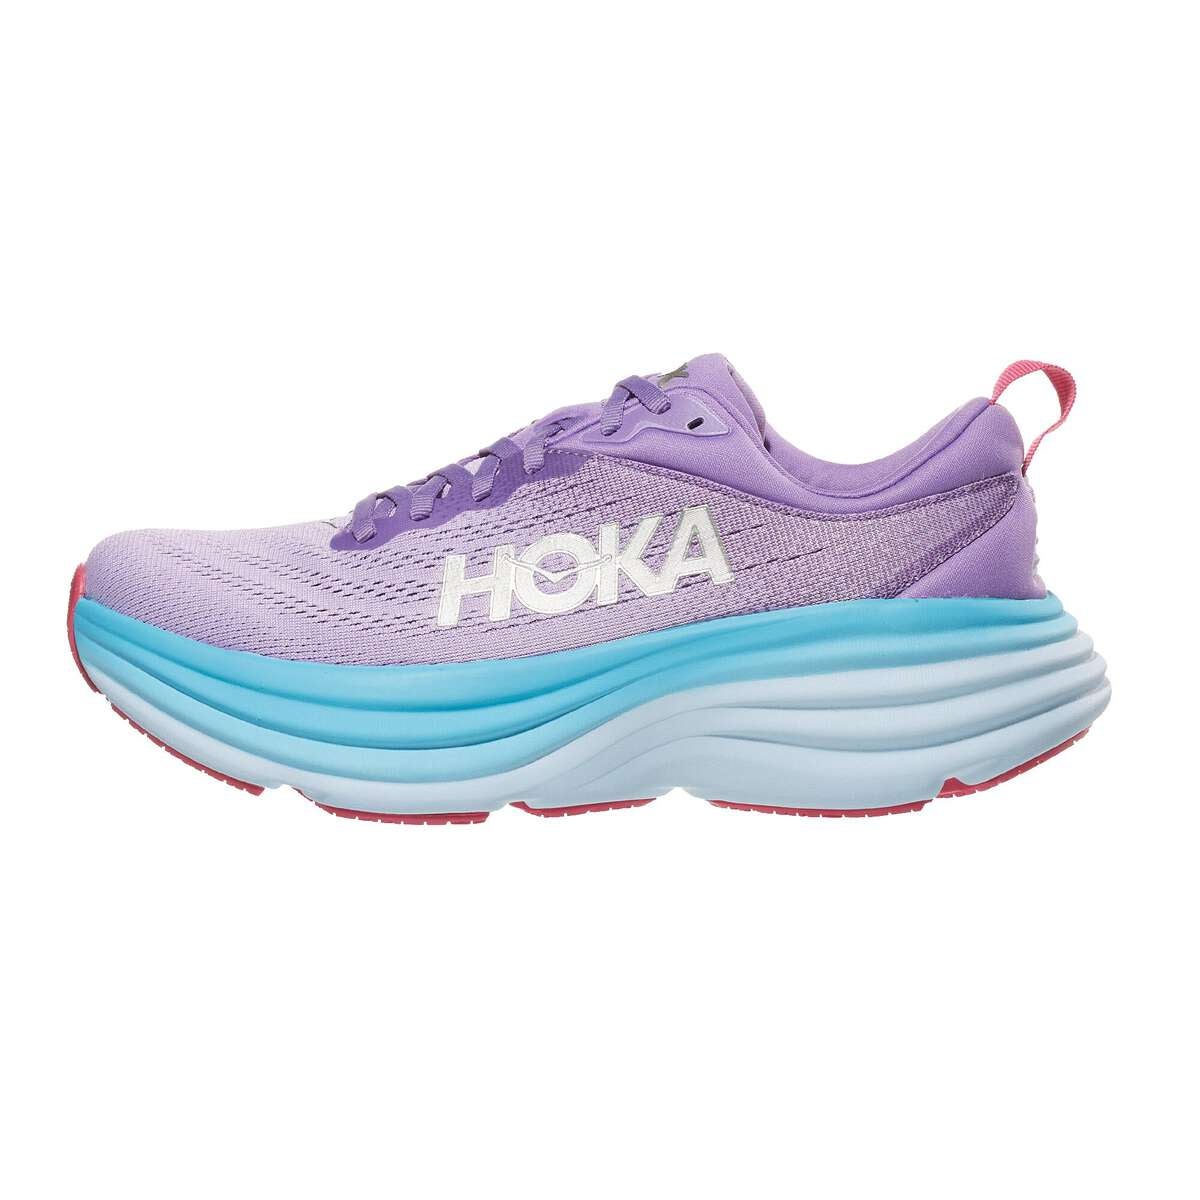 HOKA Bondi 8 Women's Shoes Chalk Violet/Pastel Lilac 360° View - Tennis ...